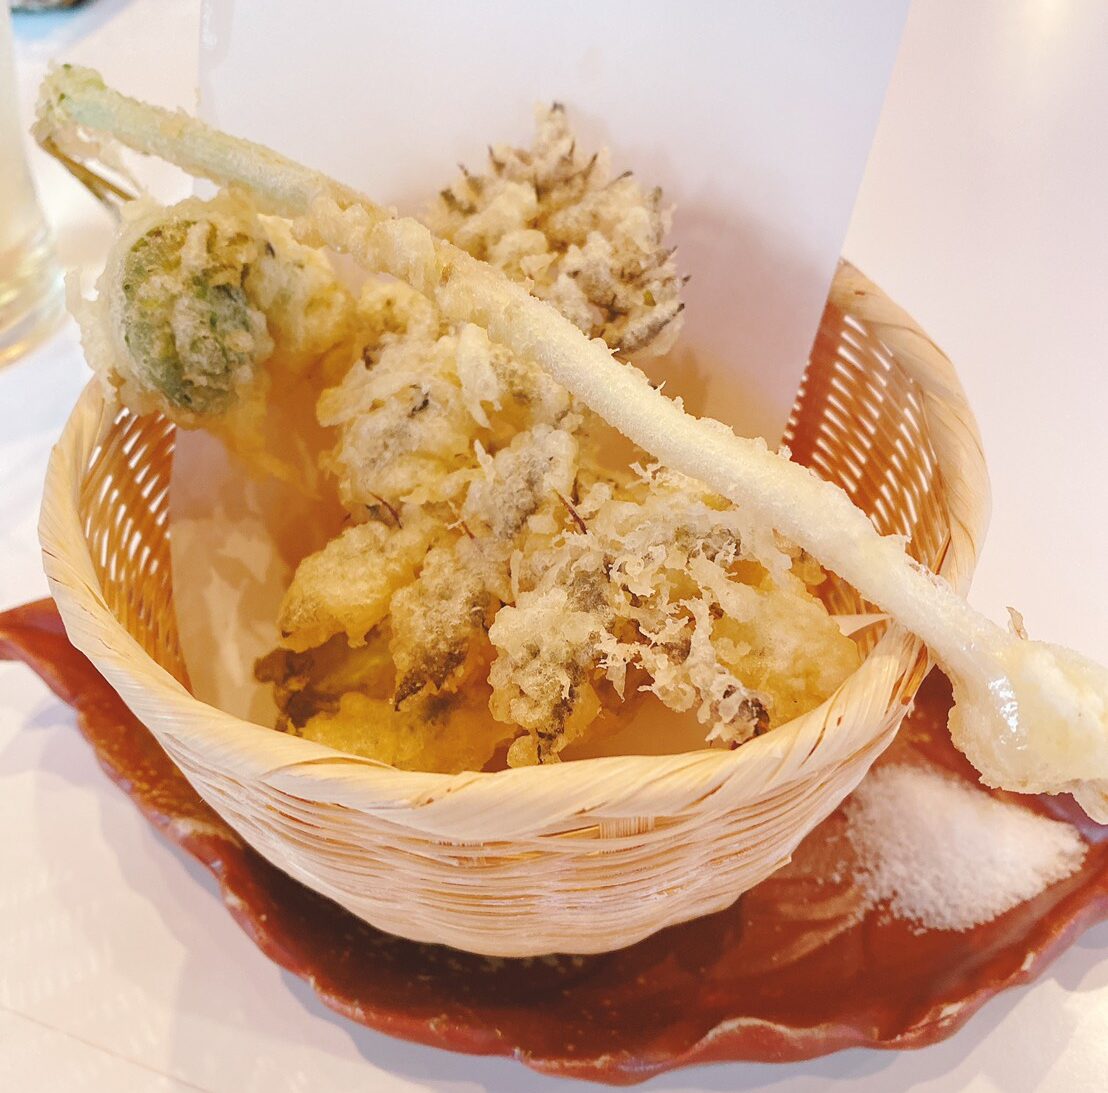 煮ものやのらは子どものお祝いにお勧め!掛川の美味しい和食屋さん!